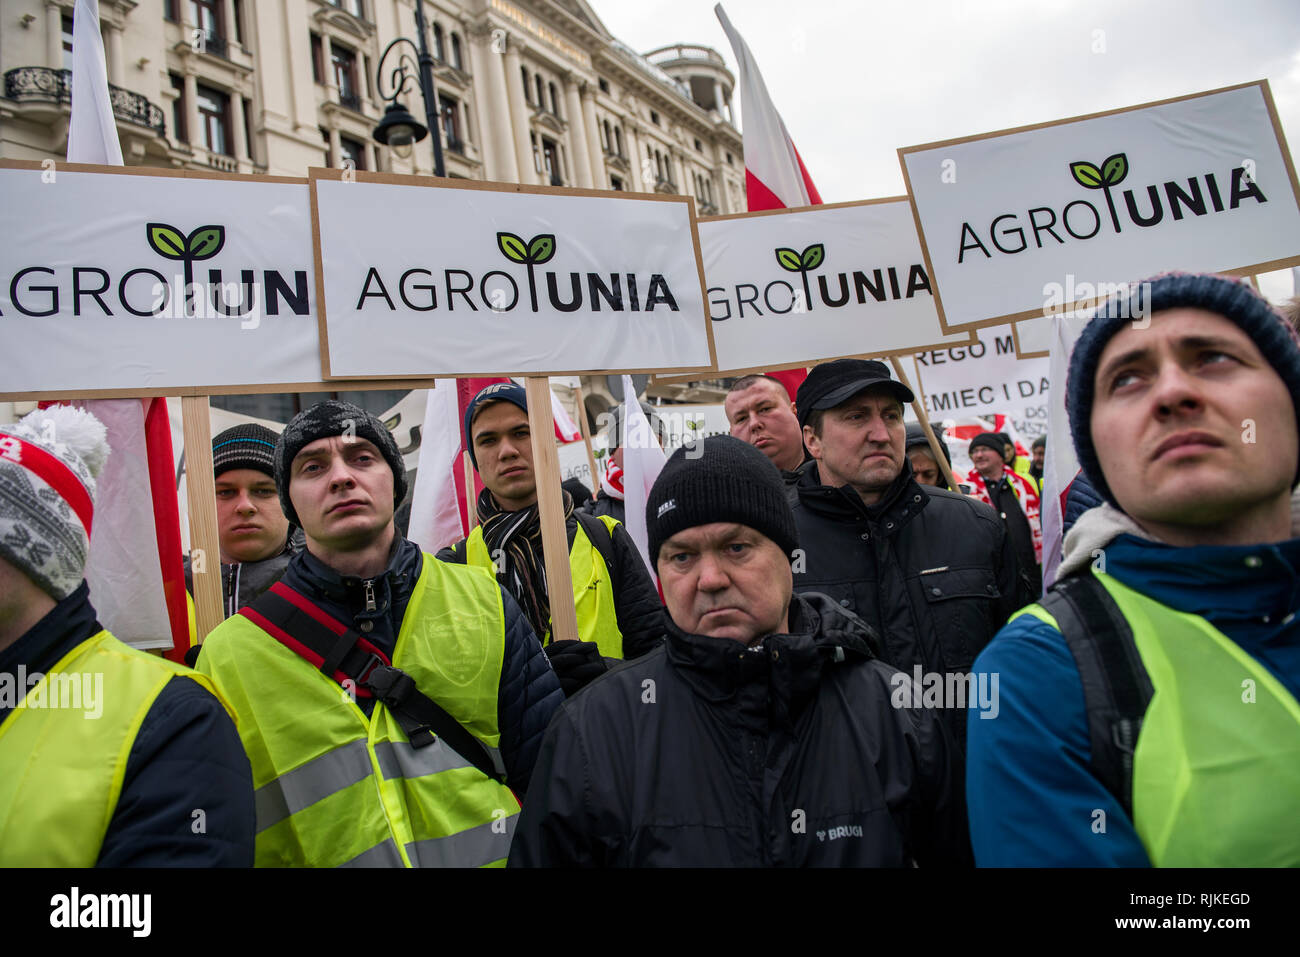 Gli agricoltori polacchi sono visti tenendo cartelloni durante la protesta. Migliaia di agricoltori provenienti da tutta la Polonia in scena una protesta al di fuori del palazzo presidenziale a Varsavia, chiedendo la restituzione di varie compensazioni, il controllo e le restrizioni sulle importazioni di prodotti agricoli nonché un aumento dei prezzi di acquisto, la manifestazione si è tenuta dal gruppo Agrounia ed erano stati fatturati dagli agricoltori come 'Siege di Varsavia." Gli agricoltori hanno preso una bara per il presidente come un simbolo della morte dell'agricoltura polacca. Foto Stock